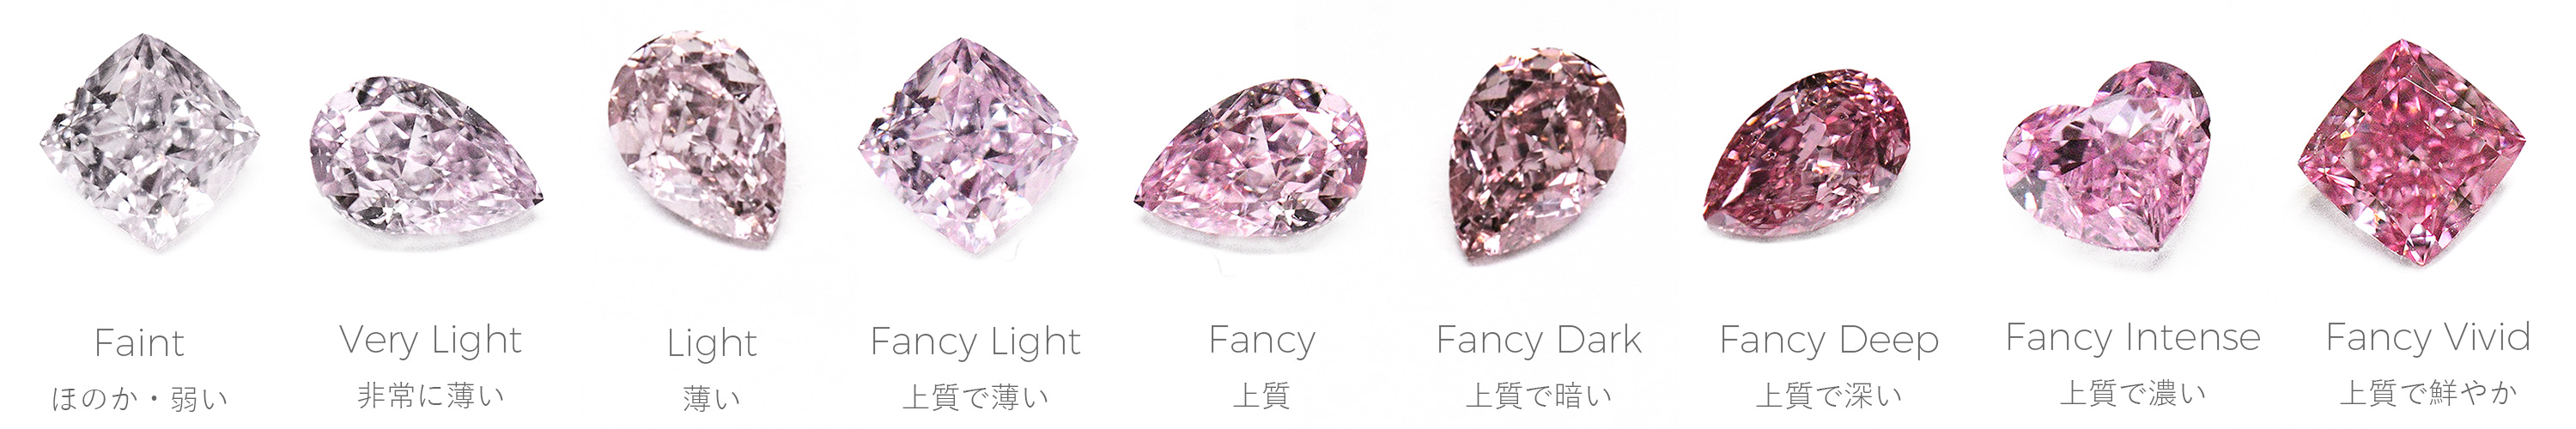 ピンクダイヤモンドのGIAカラーグレーディング